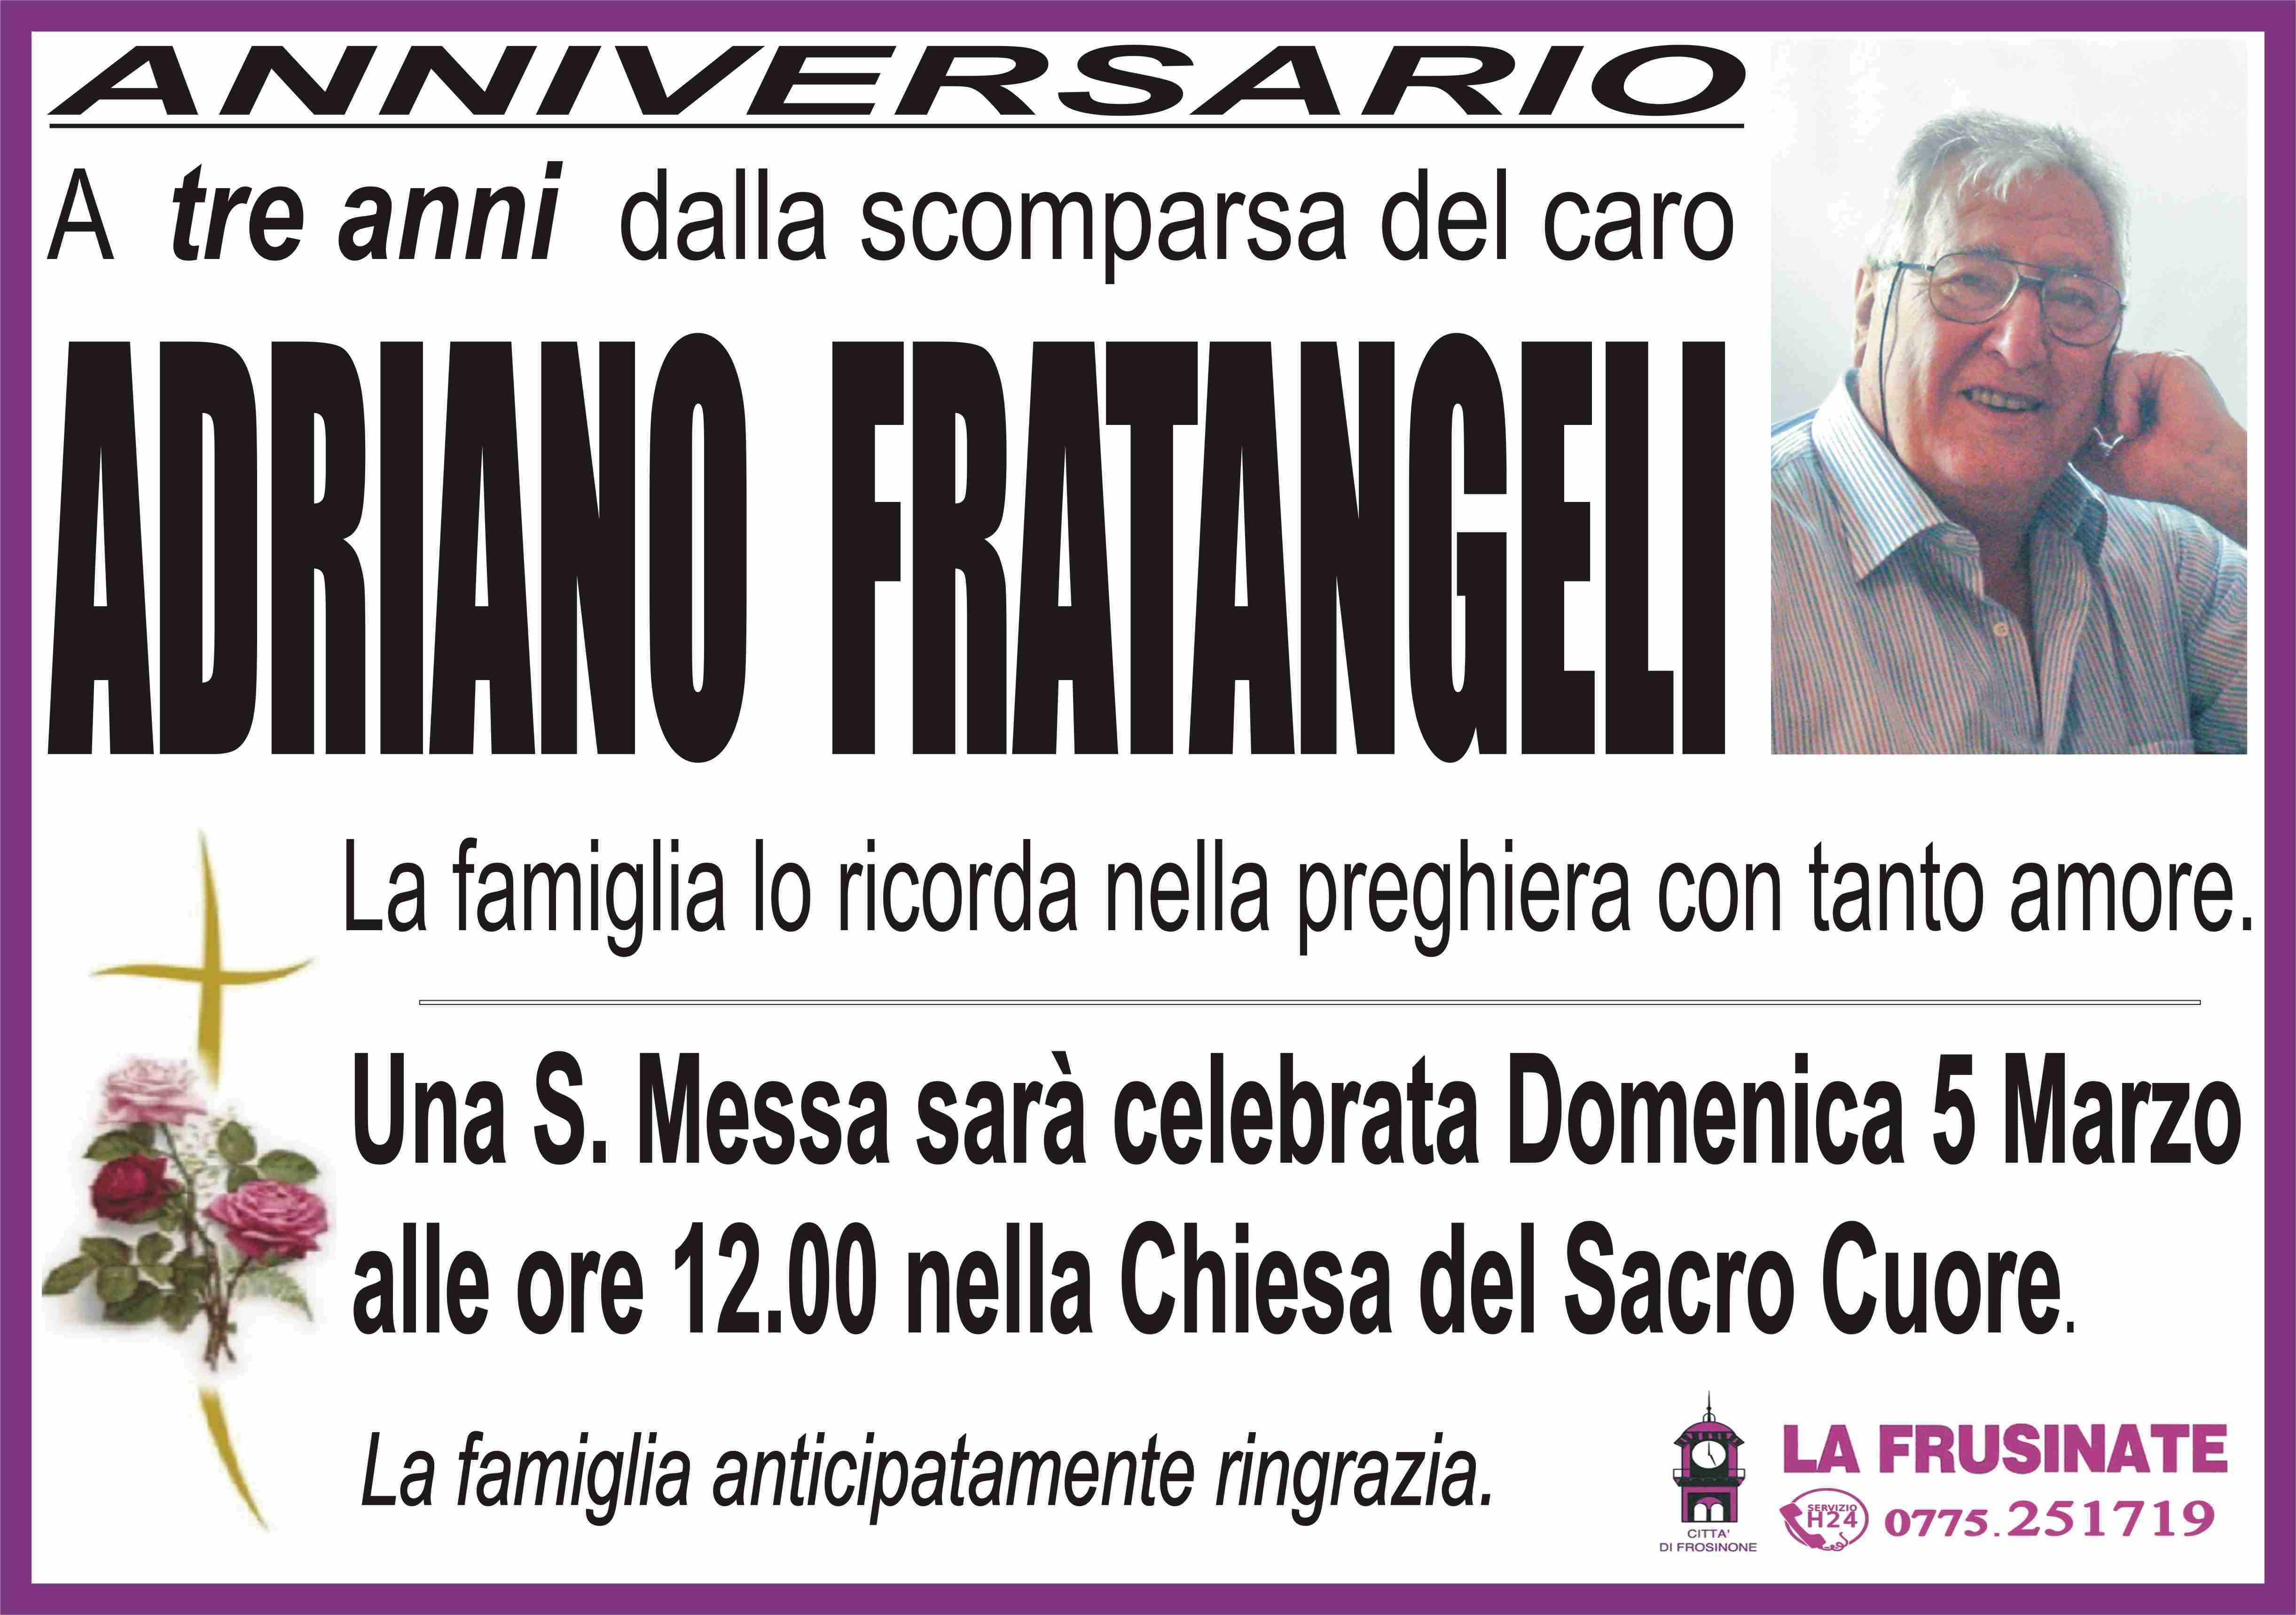 Adriano Fratangeli